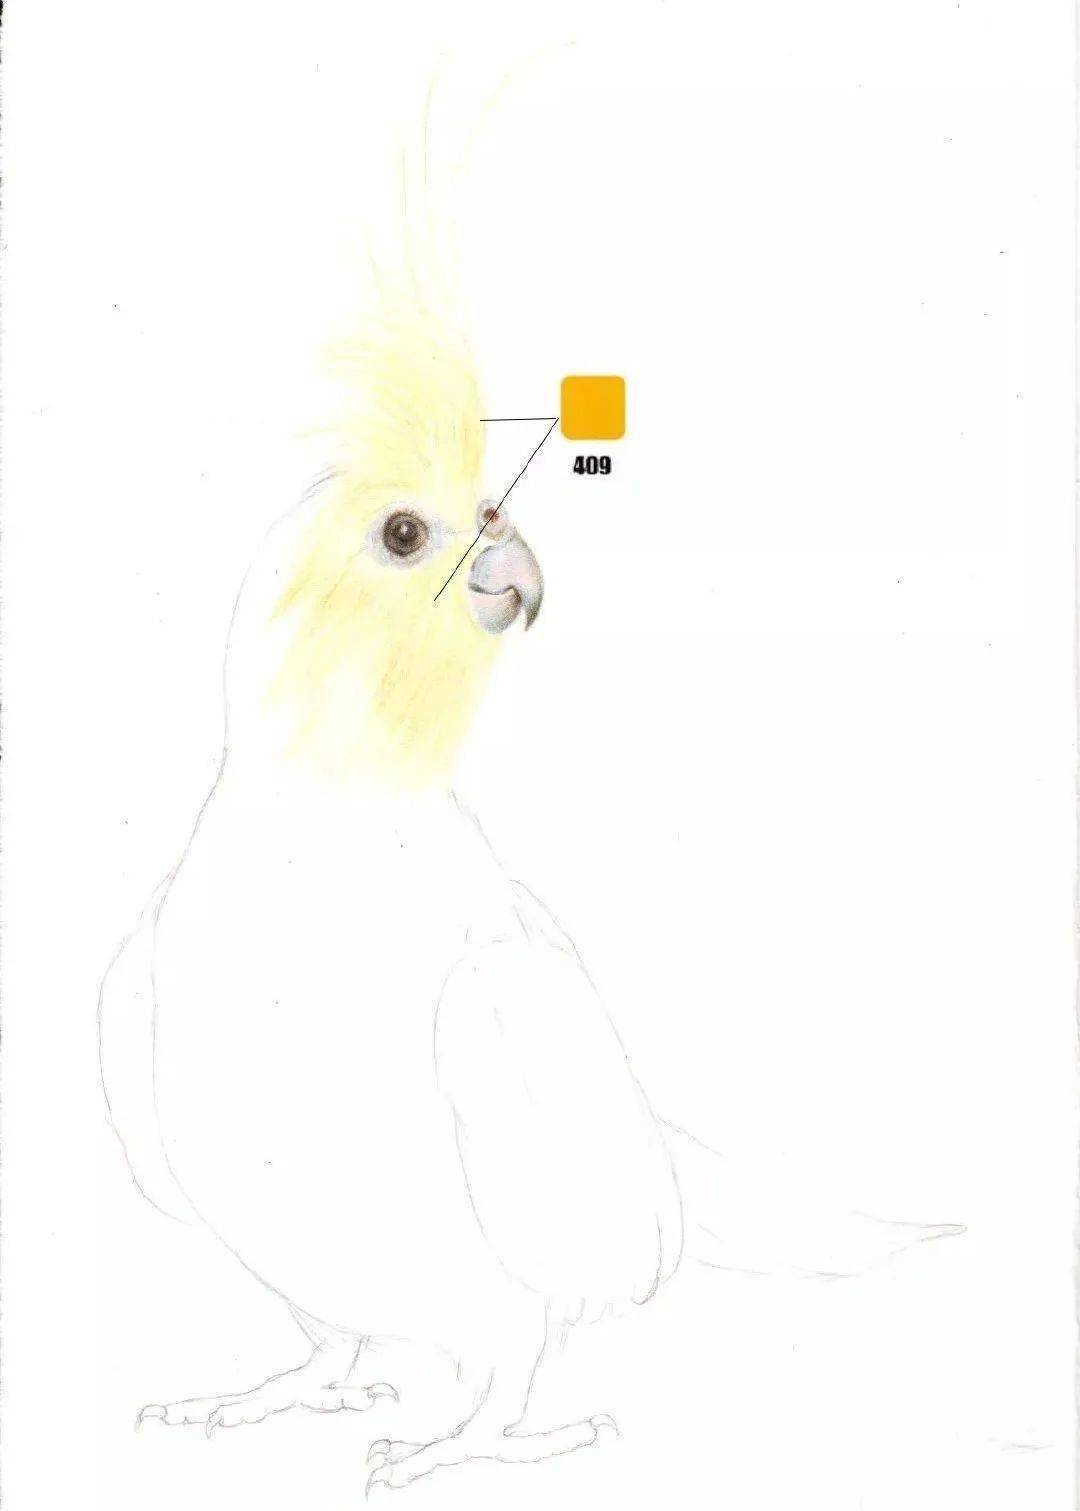 彩铅玄凤鹦鹉图片